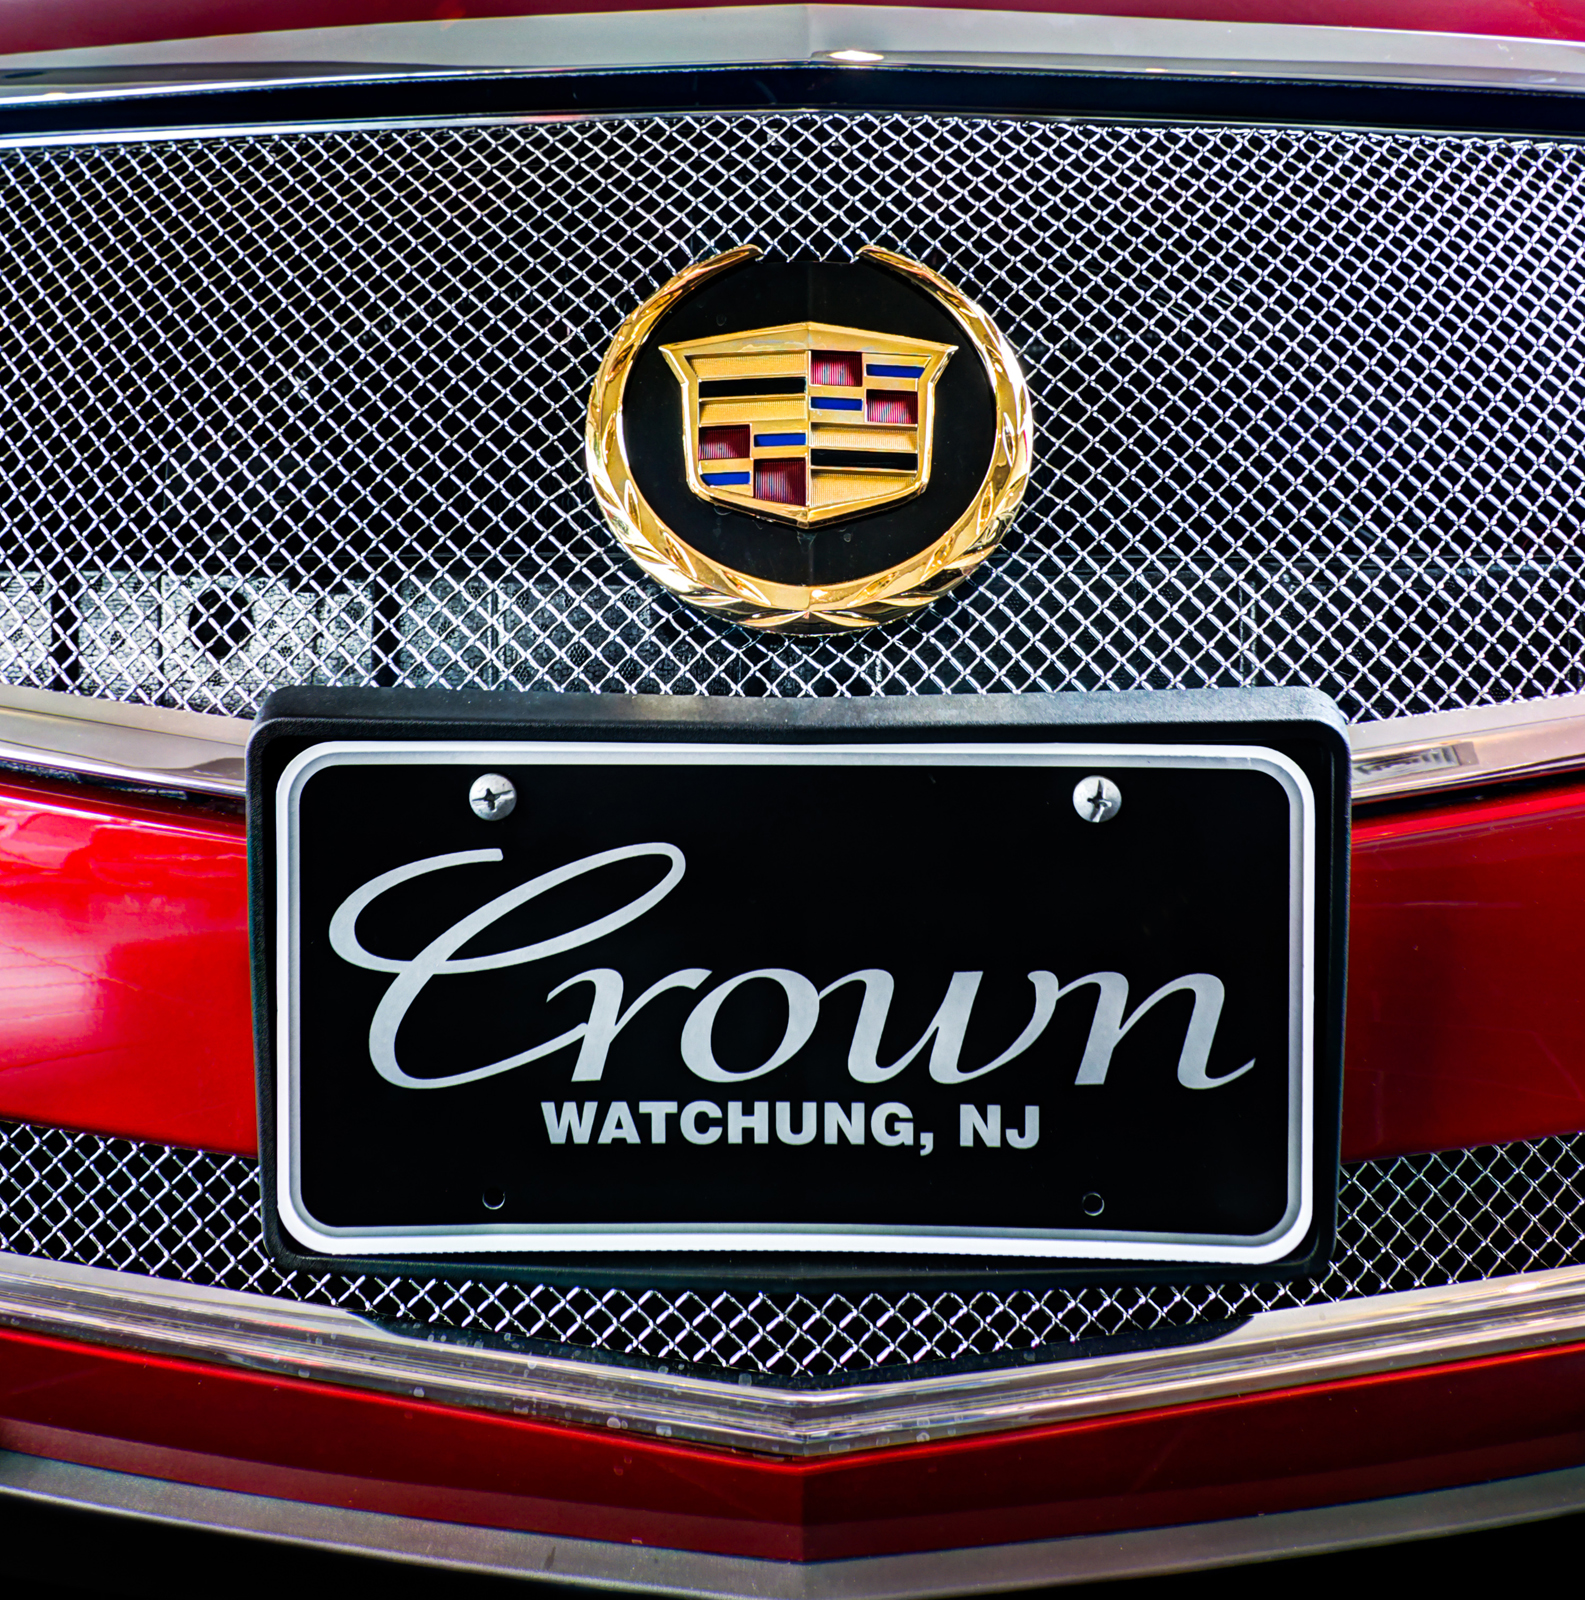 Crown Cadillac - Watchung, NJ